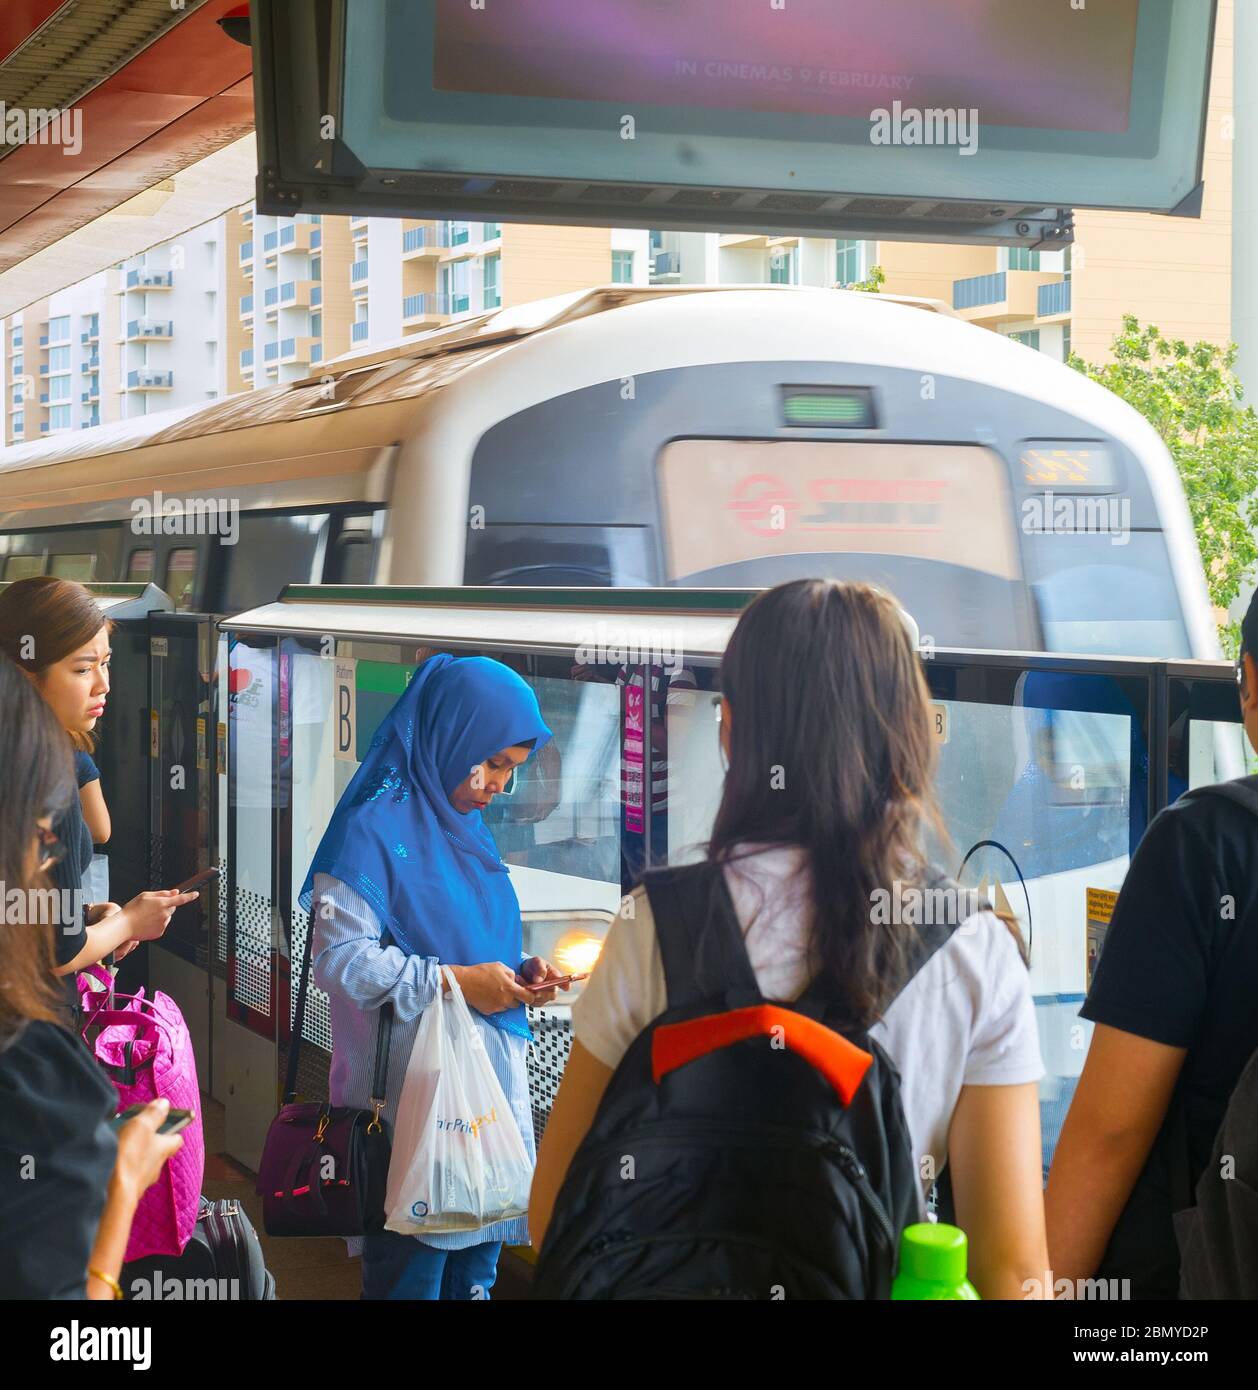 Singapur - Feb 15, 2017: Los pasajeros esperando para llegar Singapore Mass Rapid Transit (MRT) Tren. El MRT tiene 102 estaciones y es la segunda más antigua de m Foto de stock